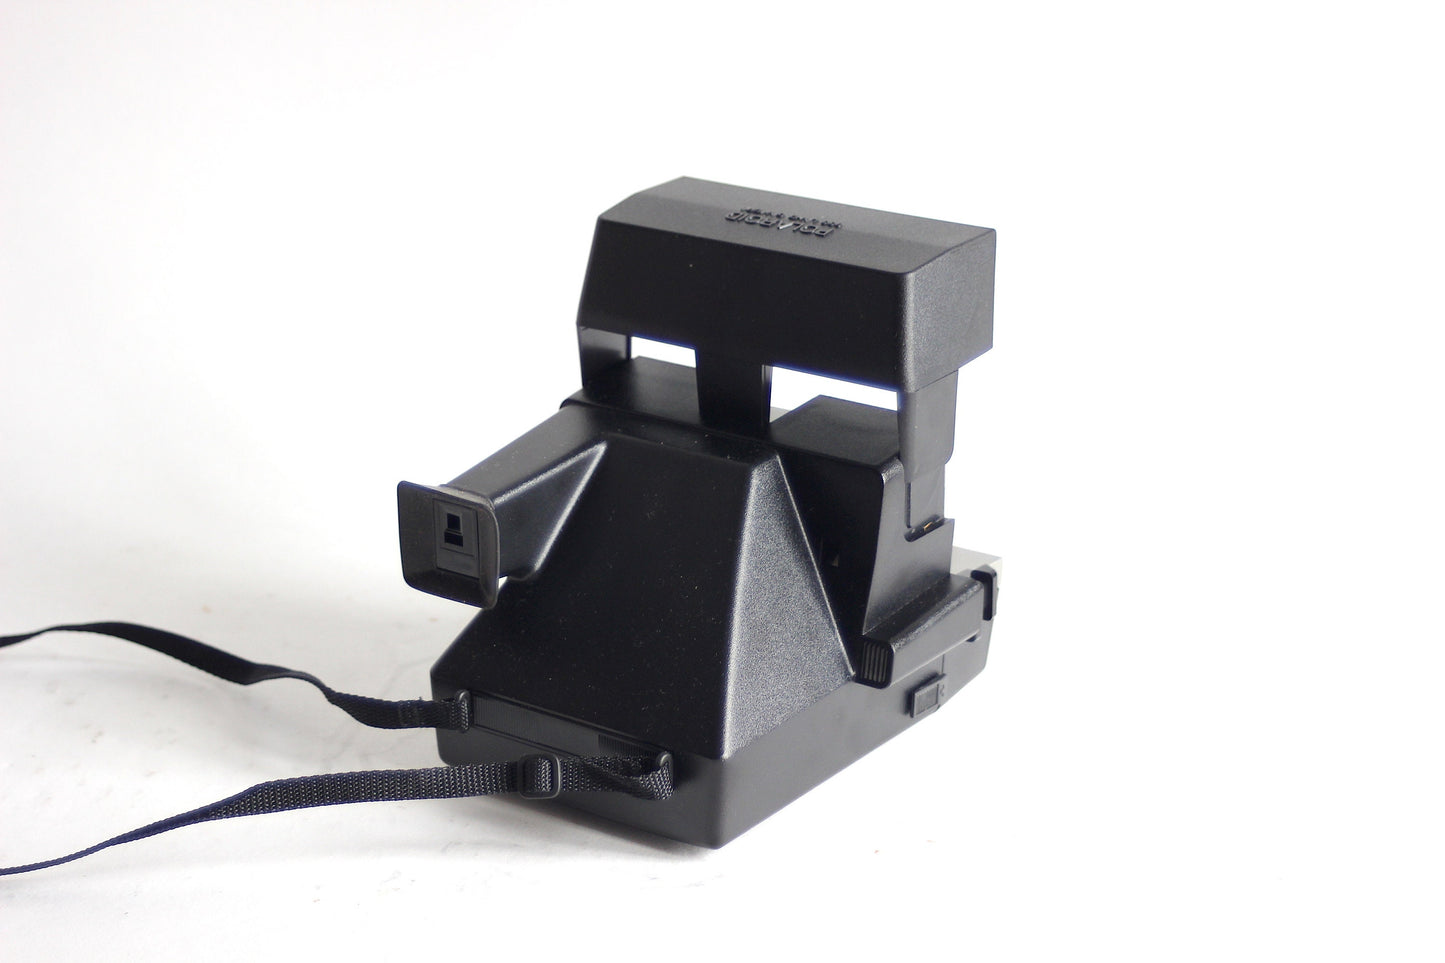 Polaroid Lightmixer 630